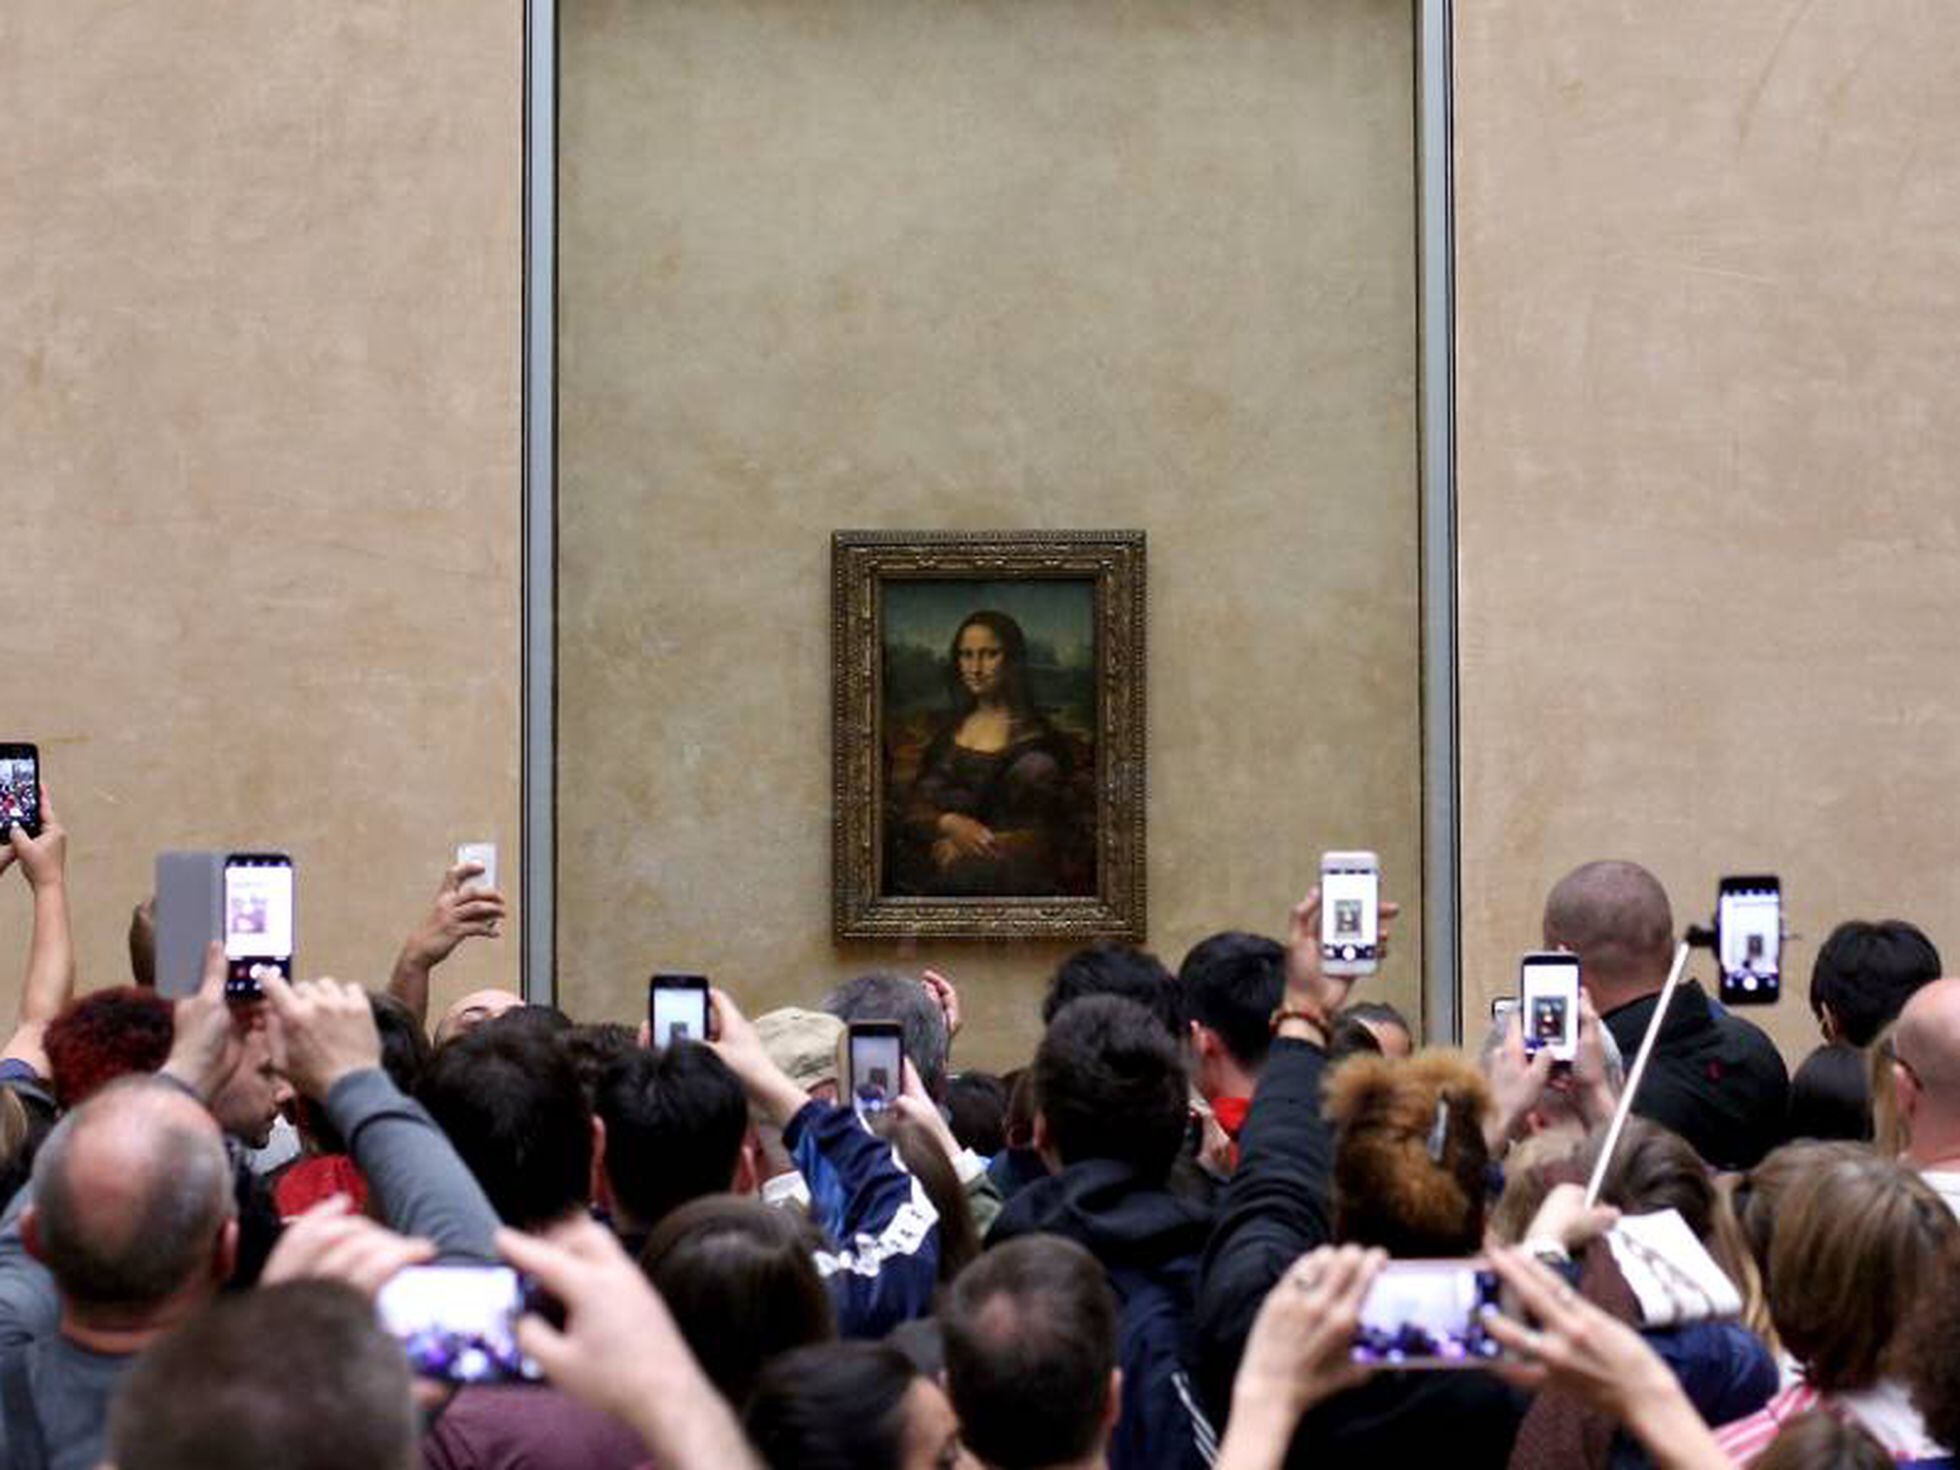 Foi pintado por Leonardo da Vinci ou por um ajudante? 'Salvator Mundi'  coloca em xeque o rigor do Louvre, Cultura